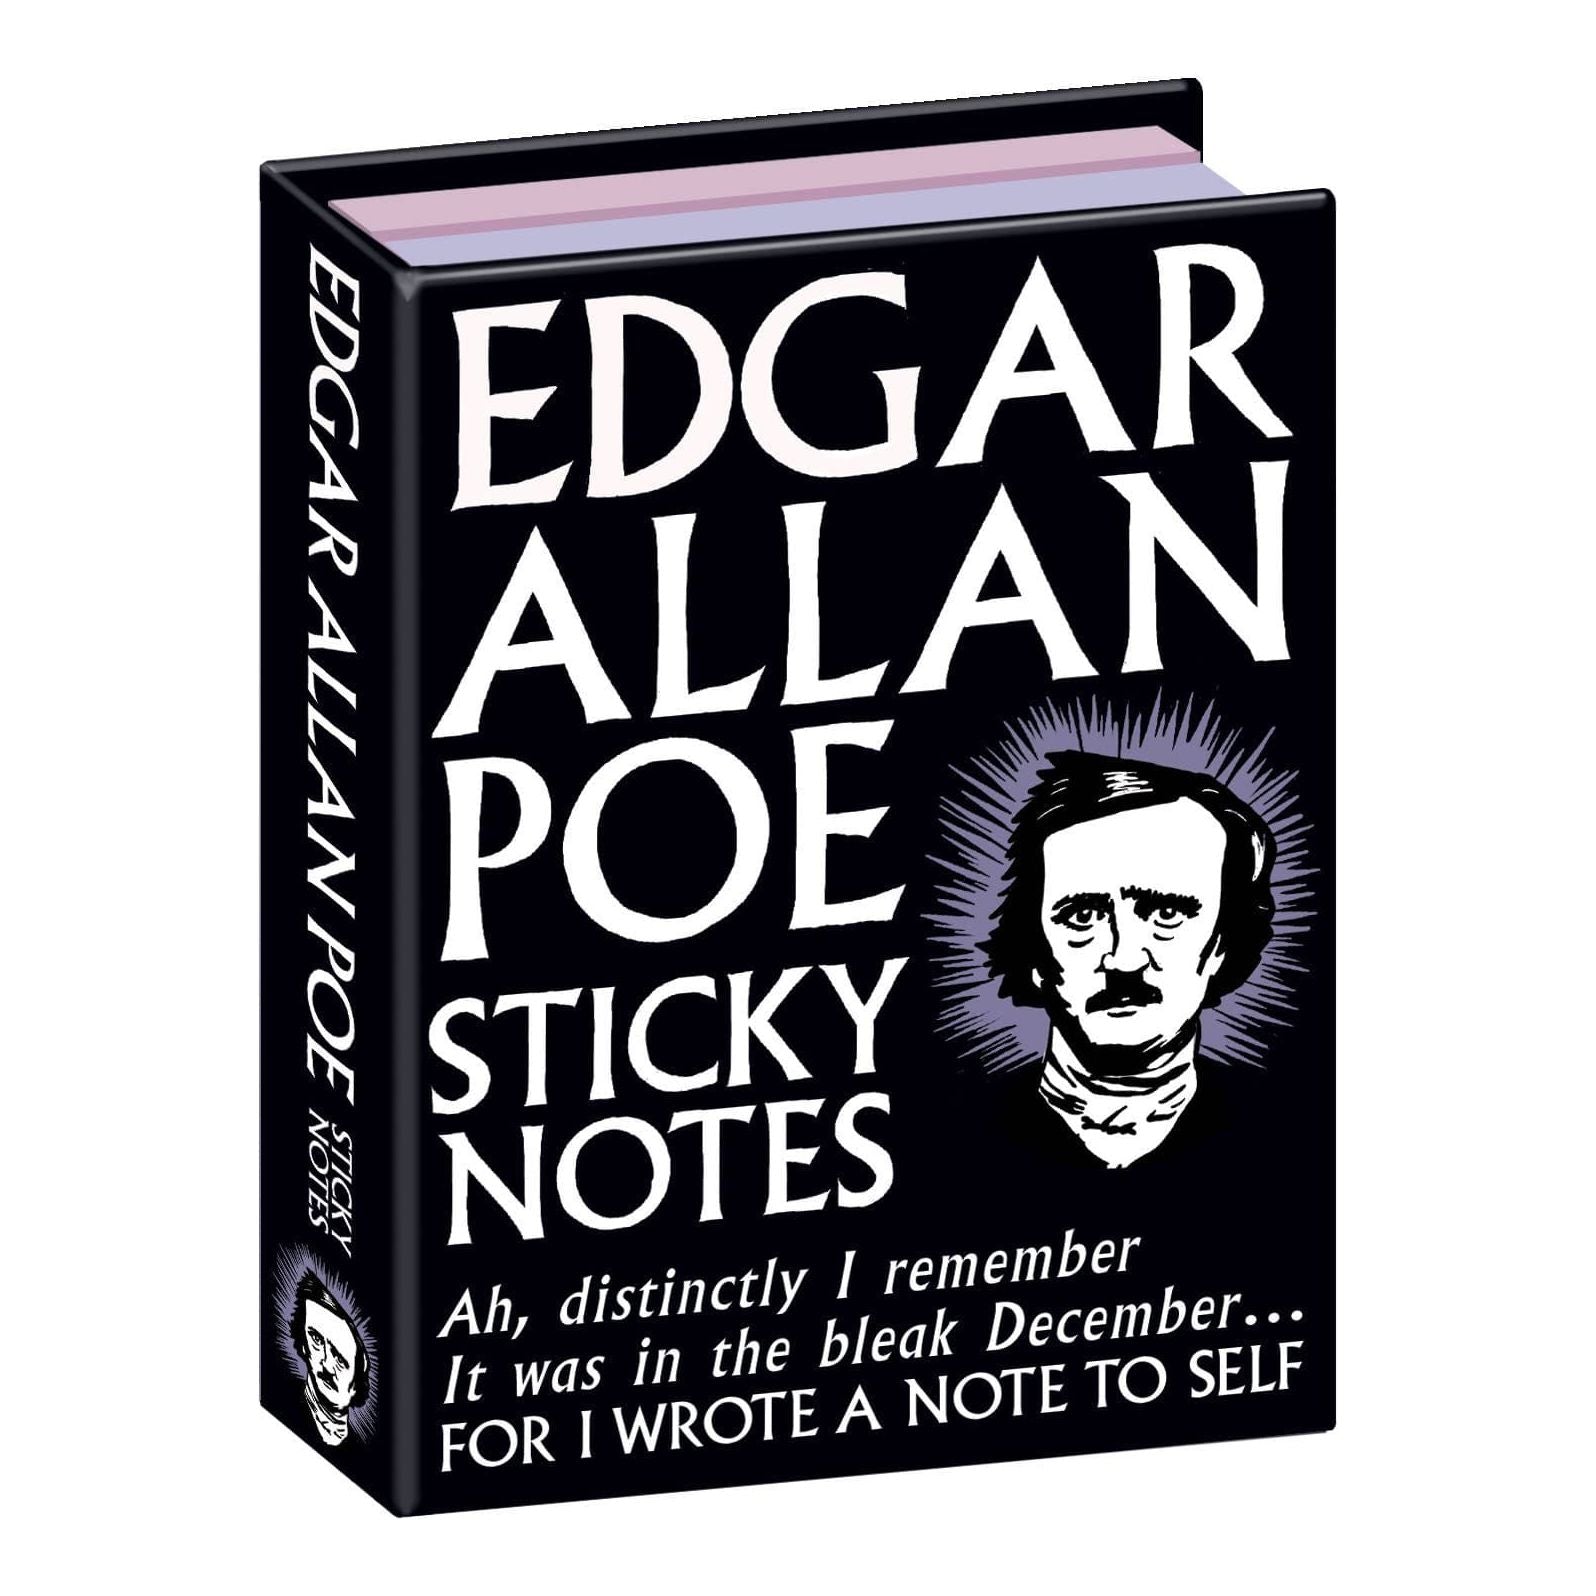 Edgar Allan Poe Sticky Notes BookGeek